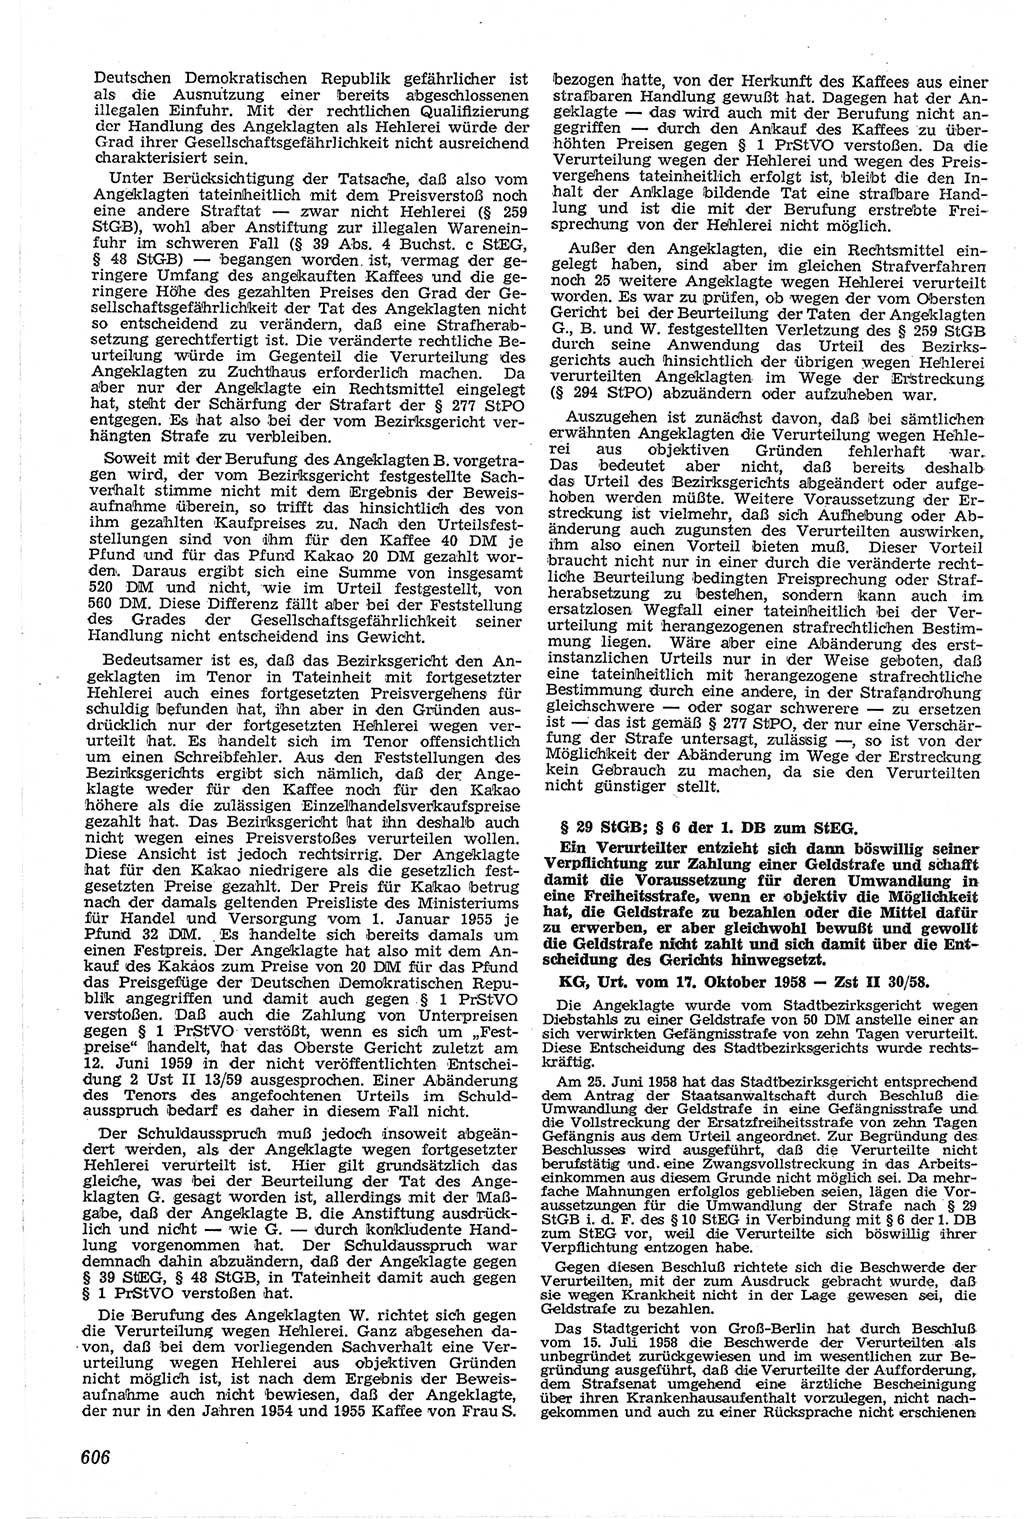 Neue Justiz (NJ), Zeitschrift für Recht und Rechtswissenschaft [Deutsche Demokratische Republik (DDR)], 13. Jahrgang 1959, Seite 606 (NJ DDR 1959, S. 606)